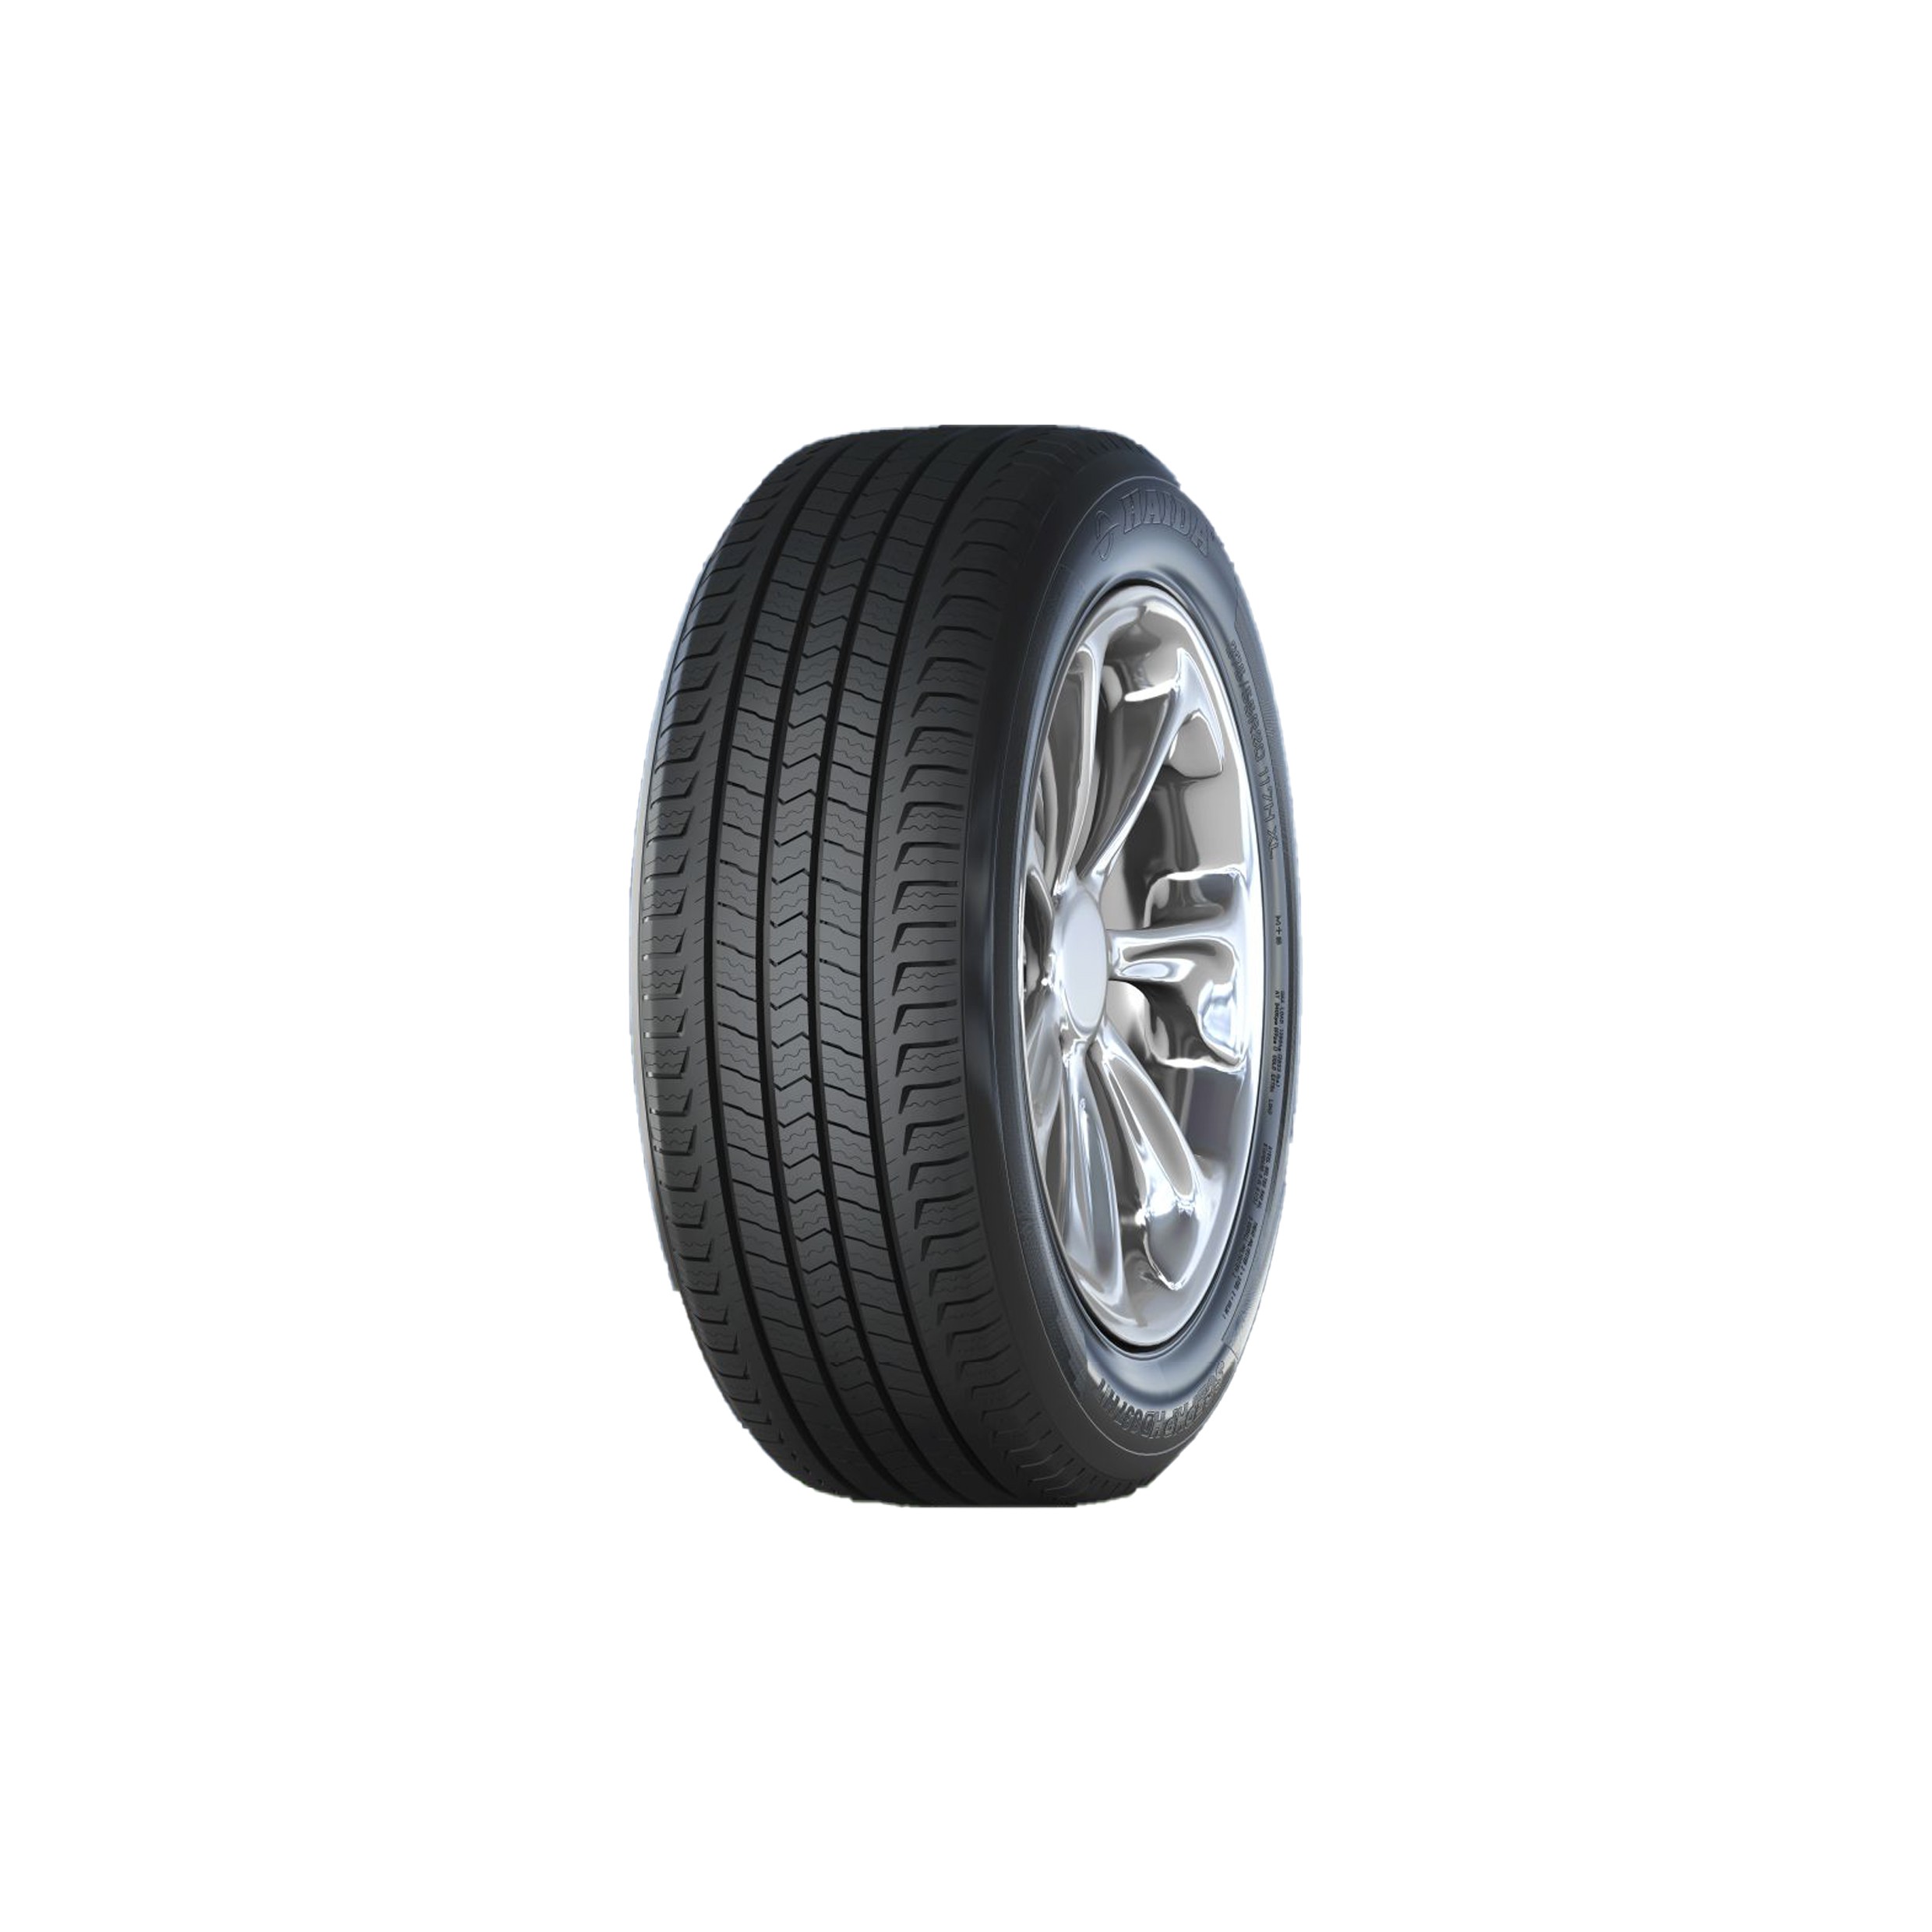 汽車輪胎 省油堅固 抓地力強 耐用 高里程 多種尺寸適用